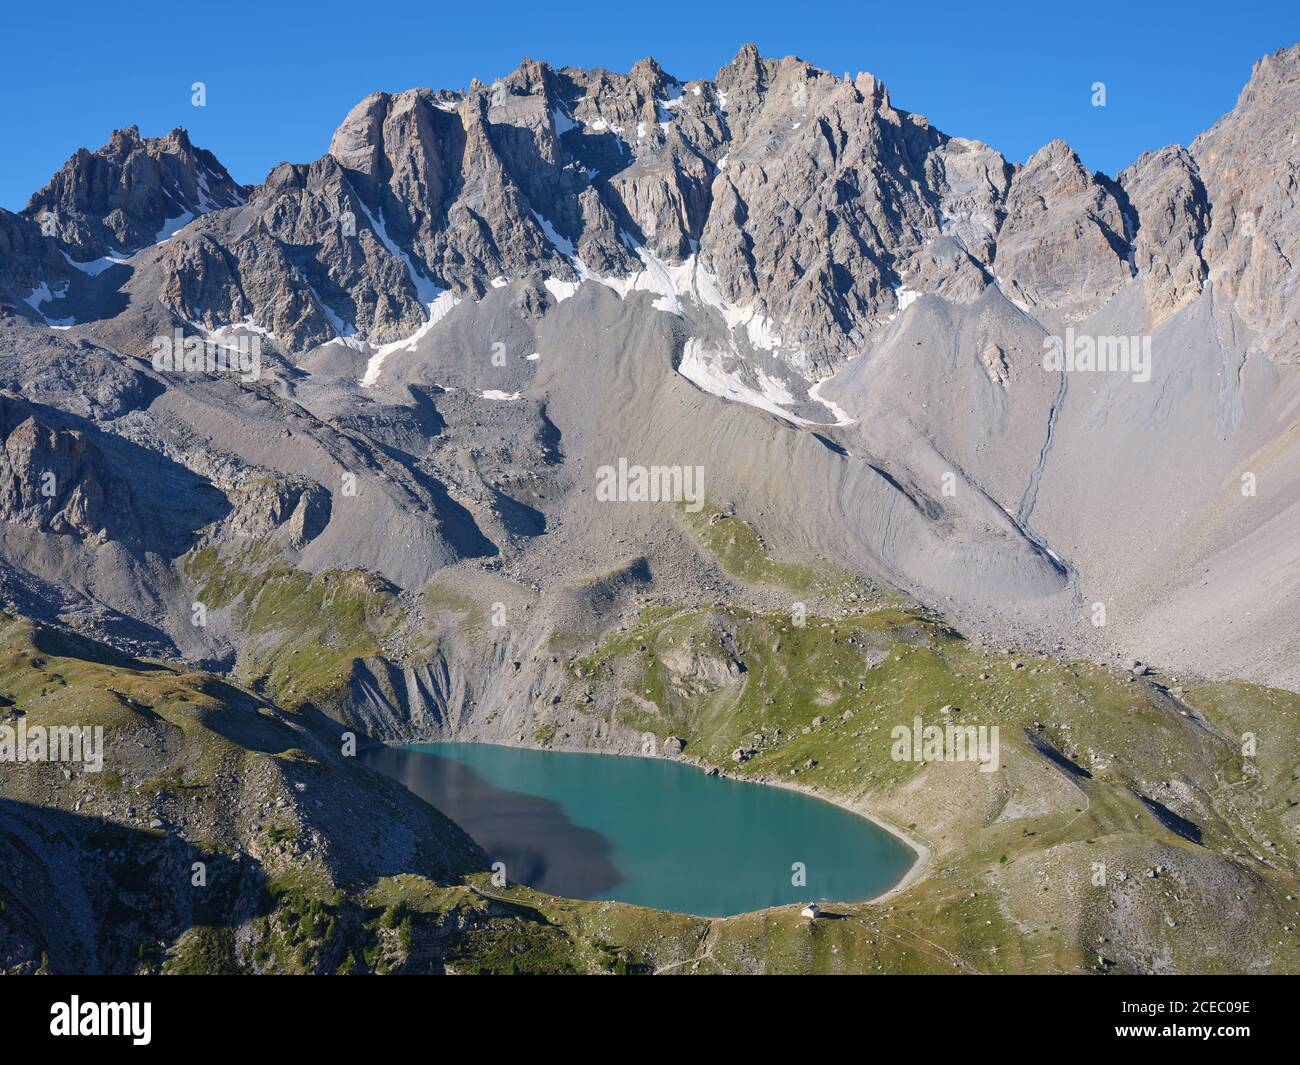 AERIAL VIEW. Lac Sainte-Anne, a glacial lake (alt: 2414m) at the foot of  pics de la Font Sancte (alt: 3385m). Ceillac, Hautes-Alpes, France. Stock Photo